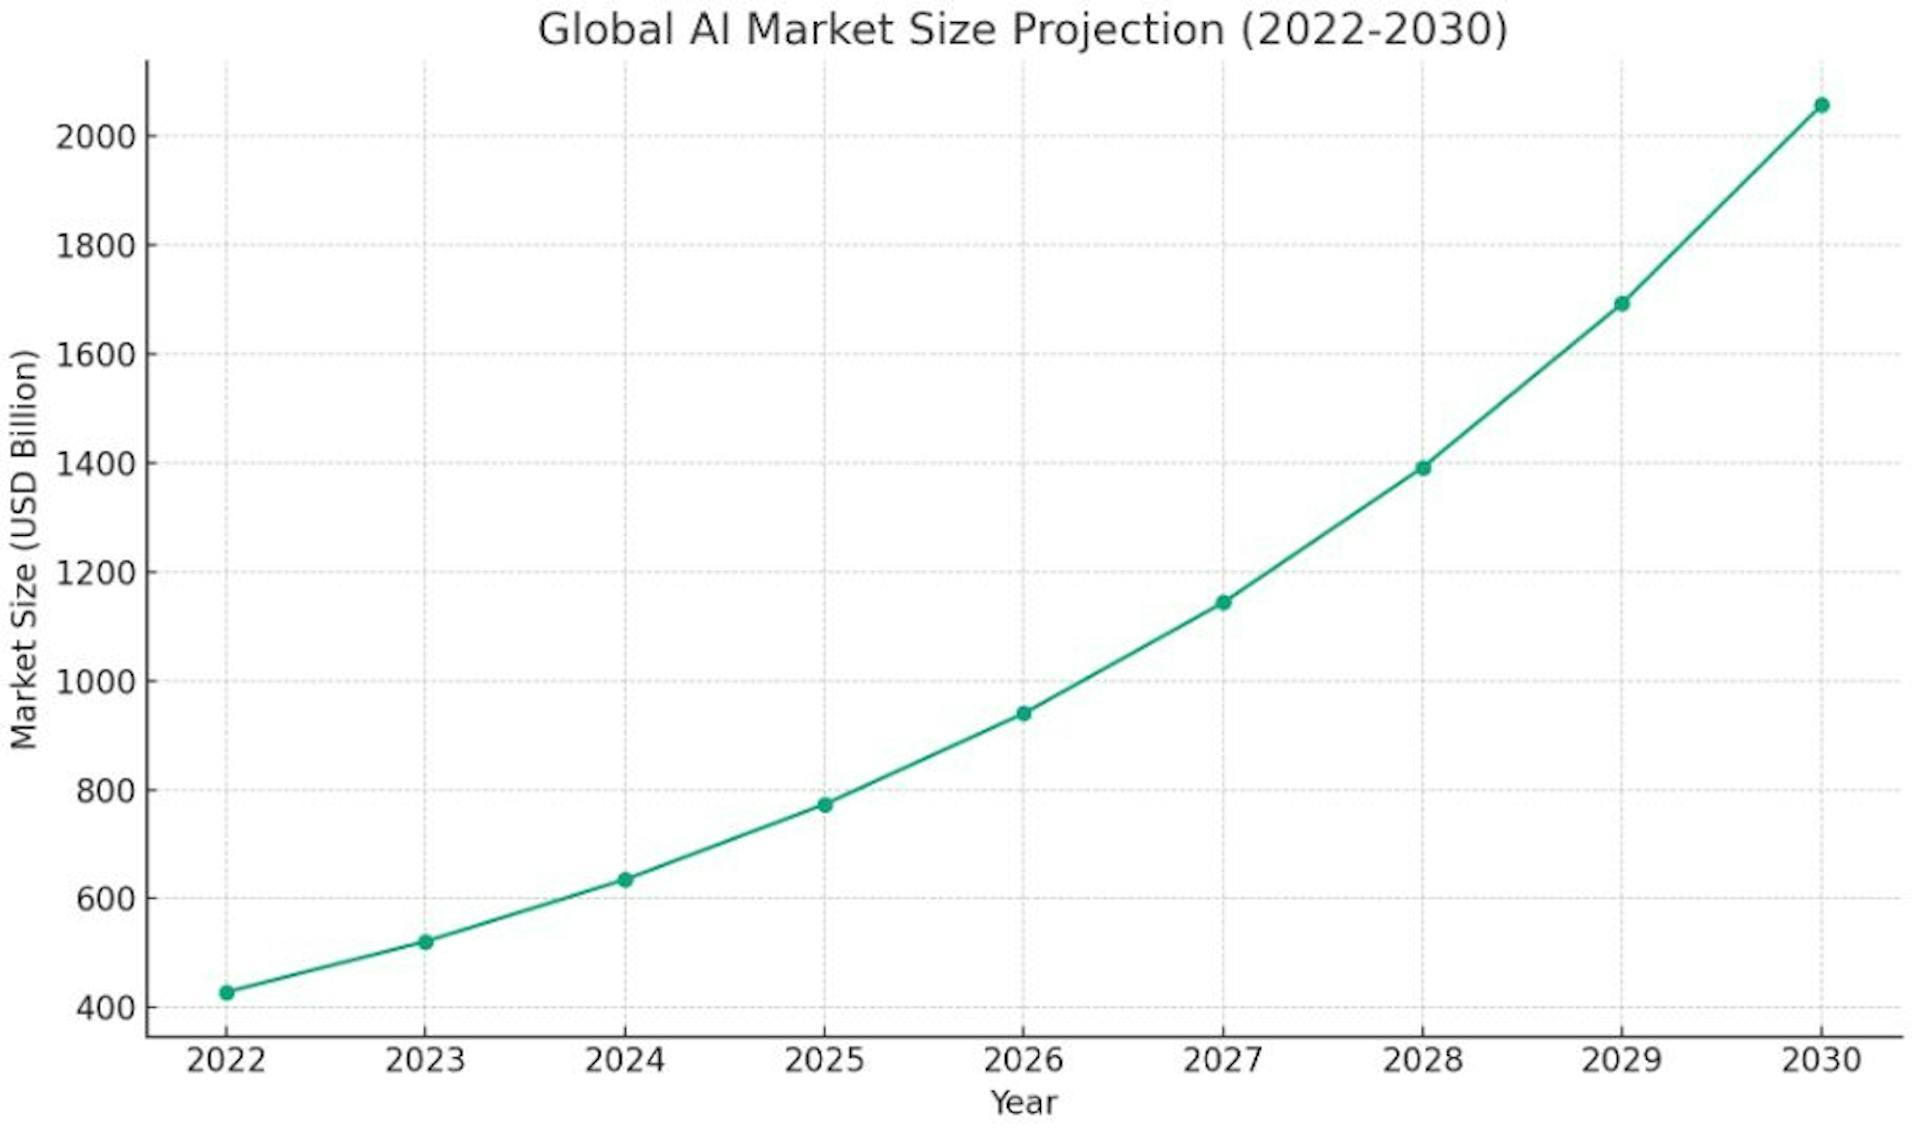 Graphique illustrant la croissance projetée de la taille du marché mondial de l’IA de 2022 à 2030.